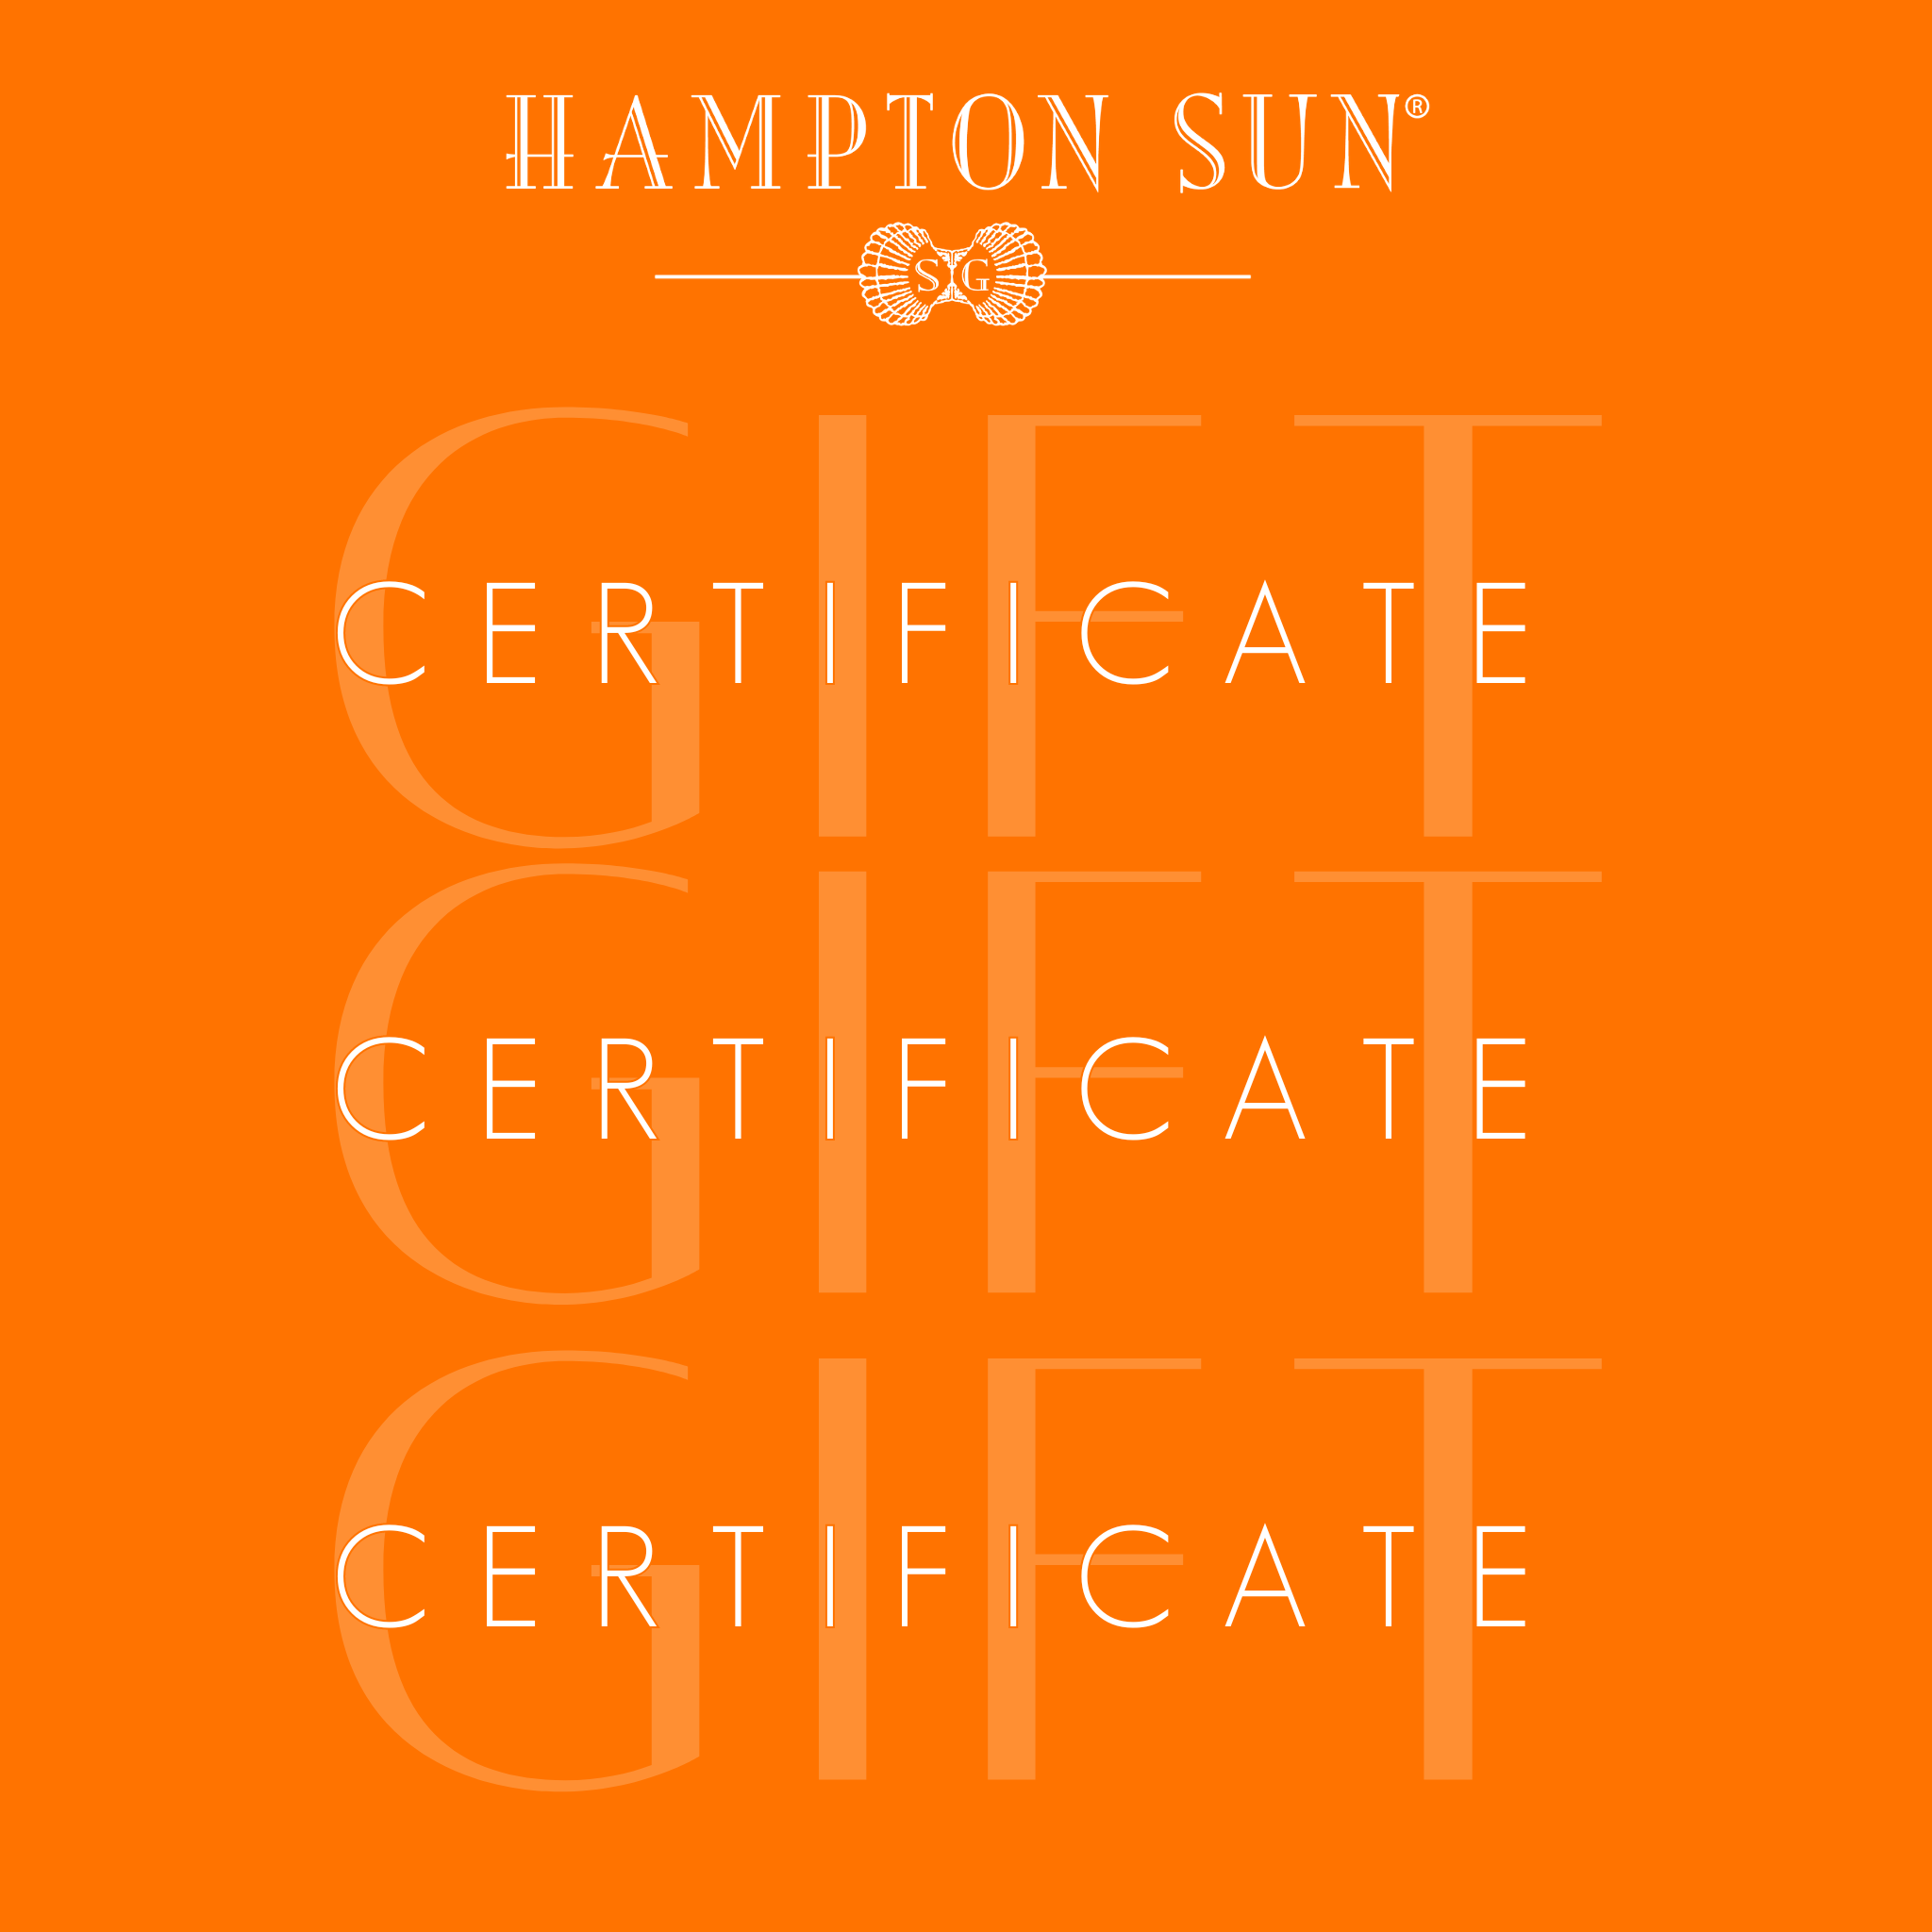 Hampton Sun Gift Card